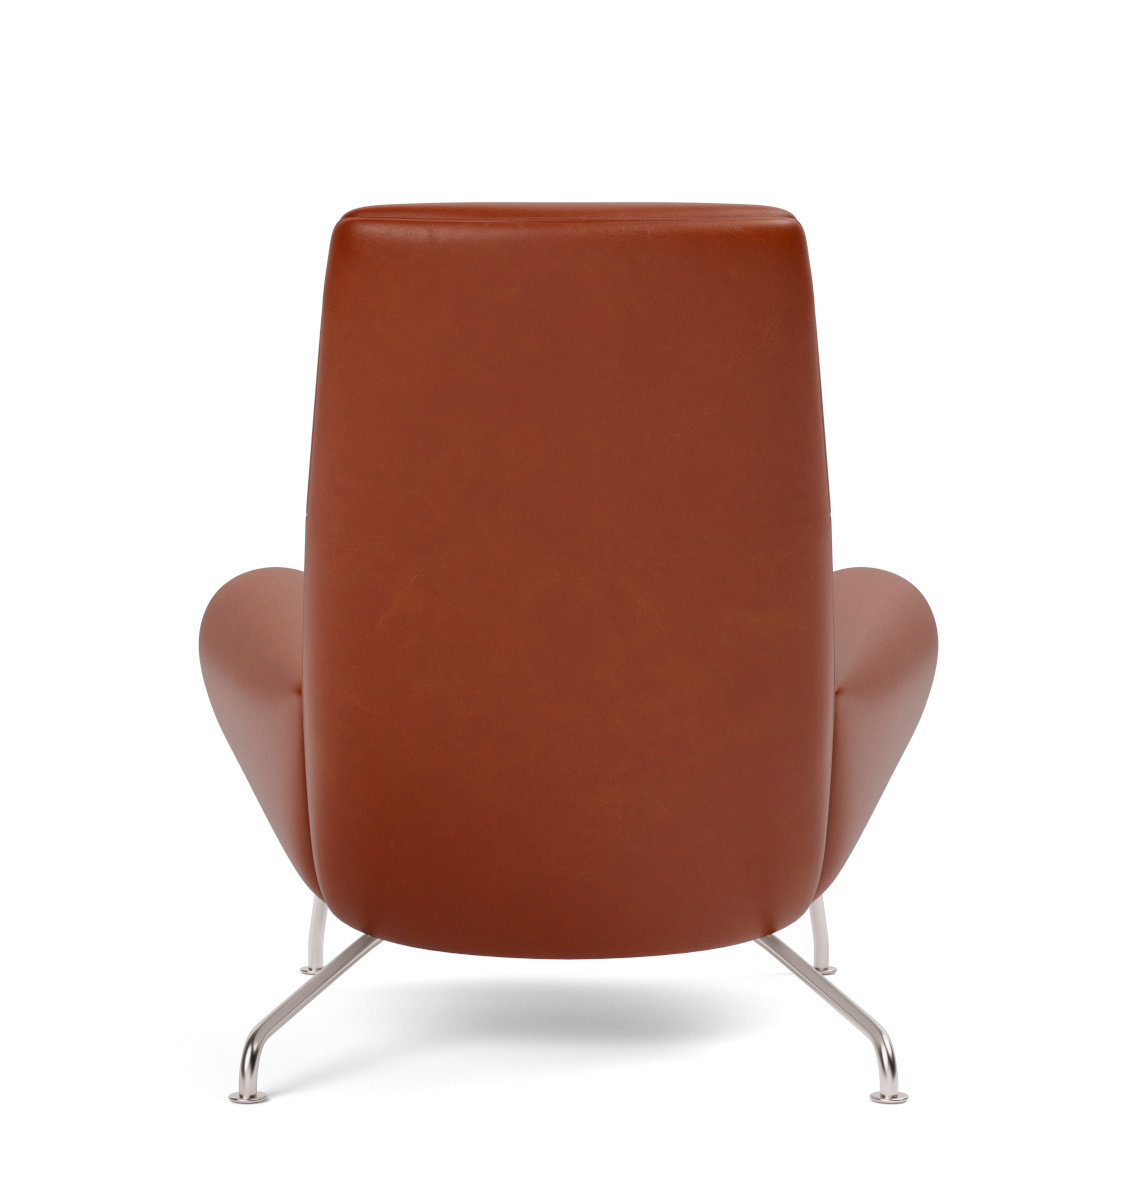 Wegner Queen Chair, brushed steel / leder cera 905 russet brown